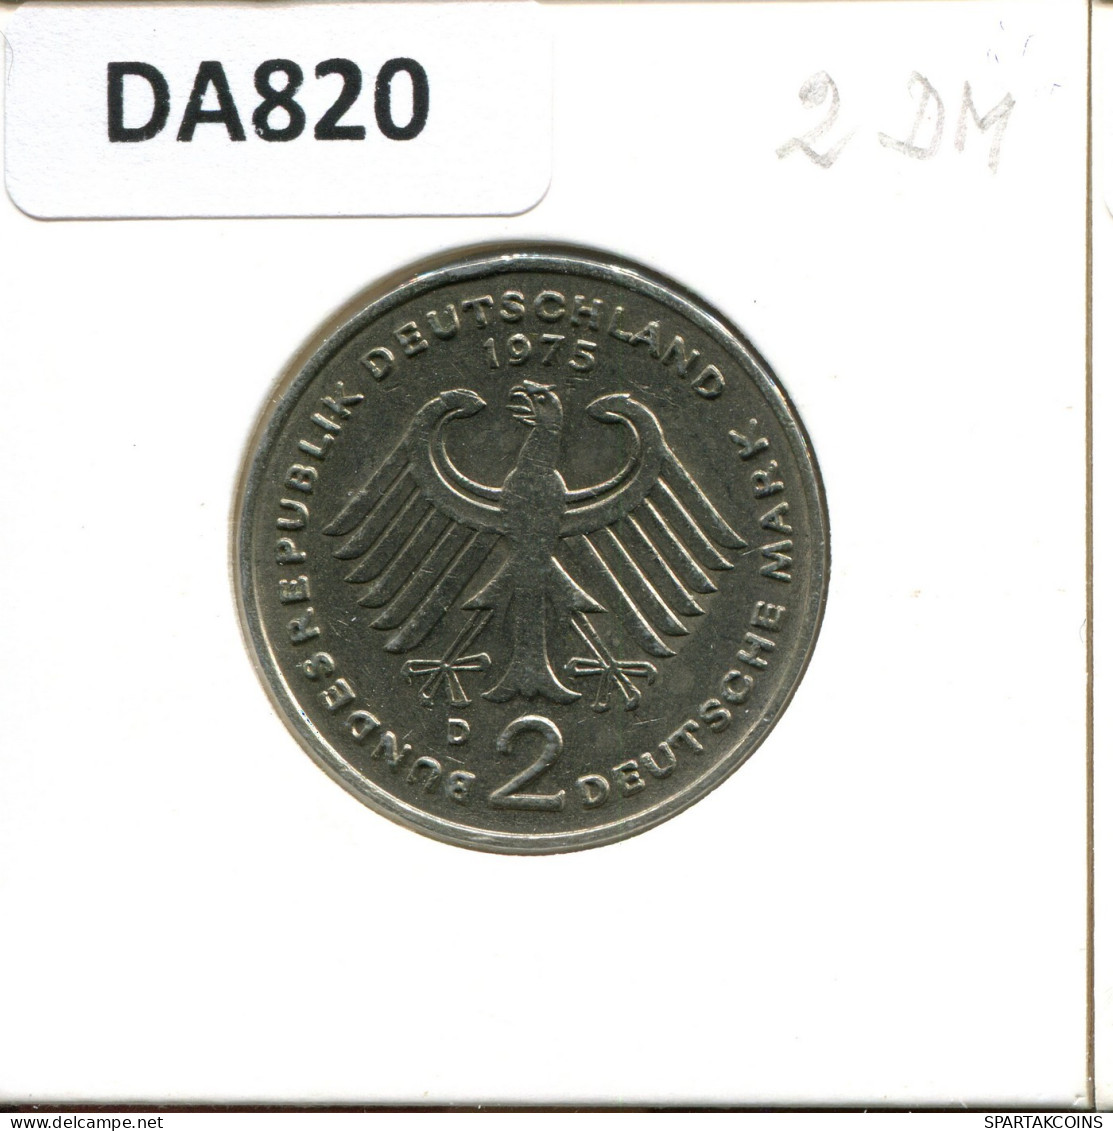 2 DM 1975 D K. ADENAUER BRD ALEMANIA Moneda GERMANY #DA820.E.A - 2 Mark